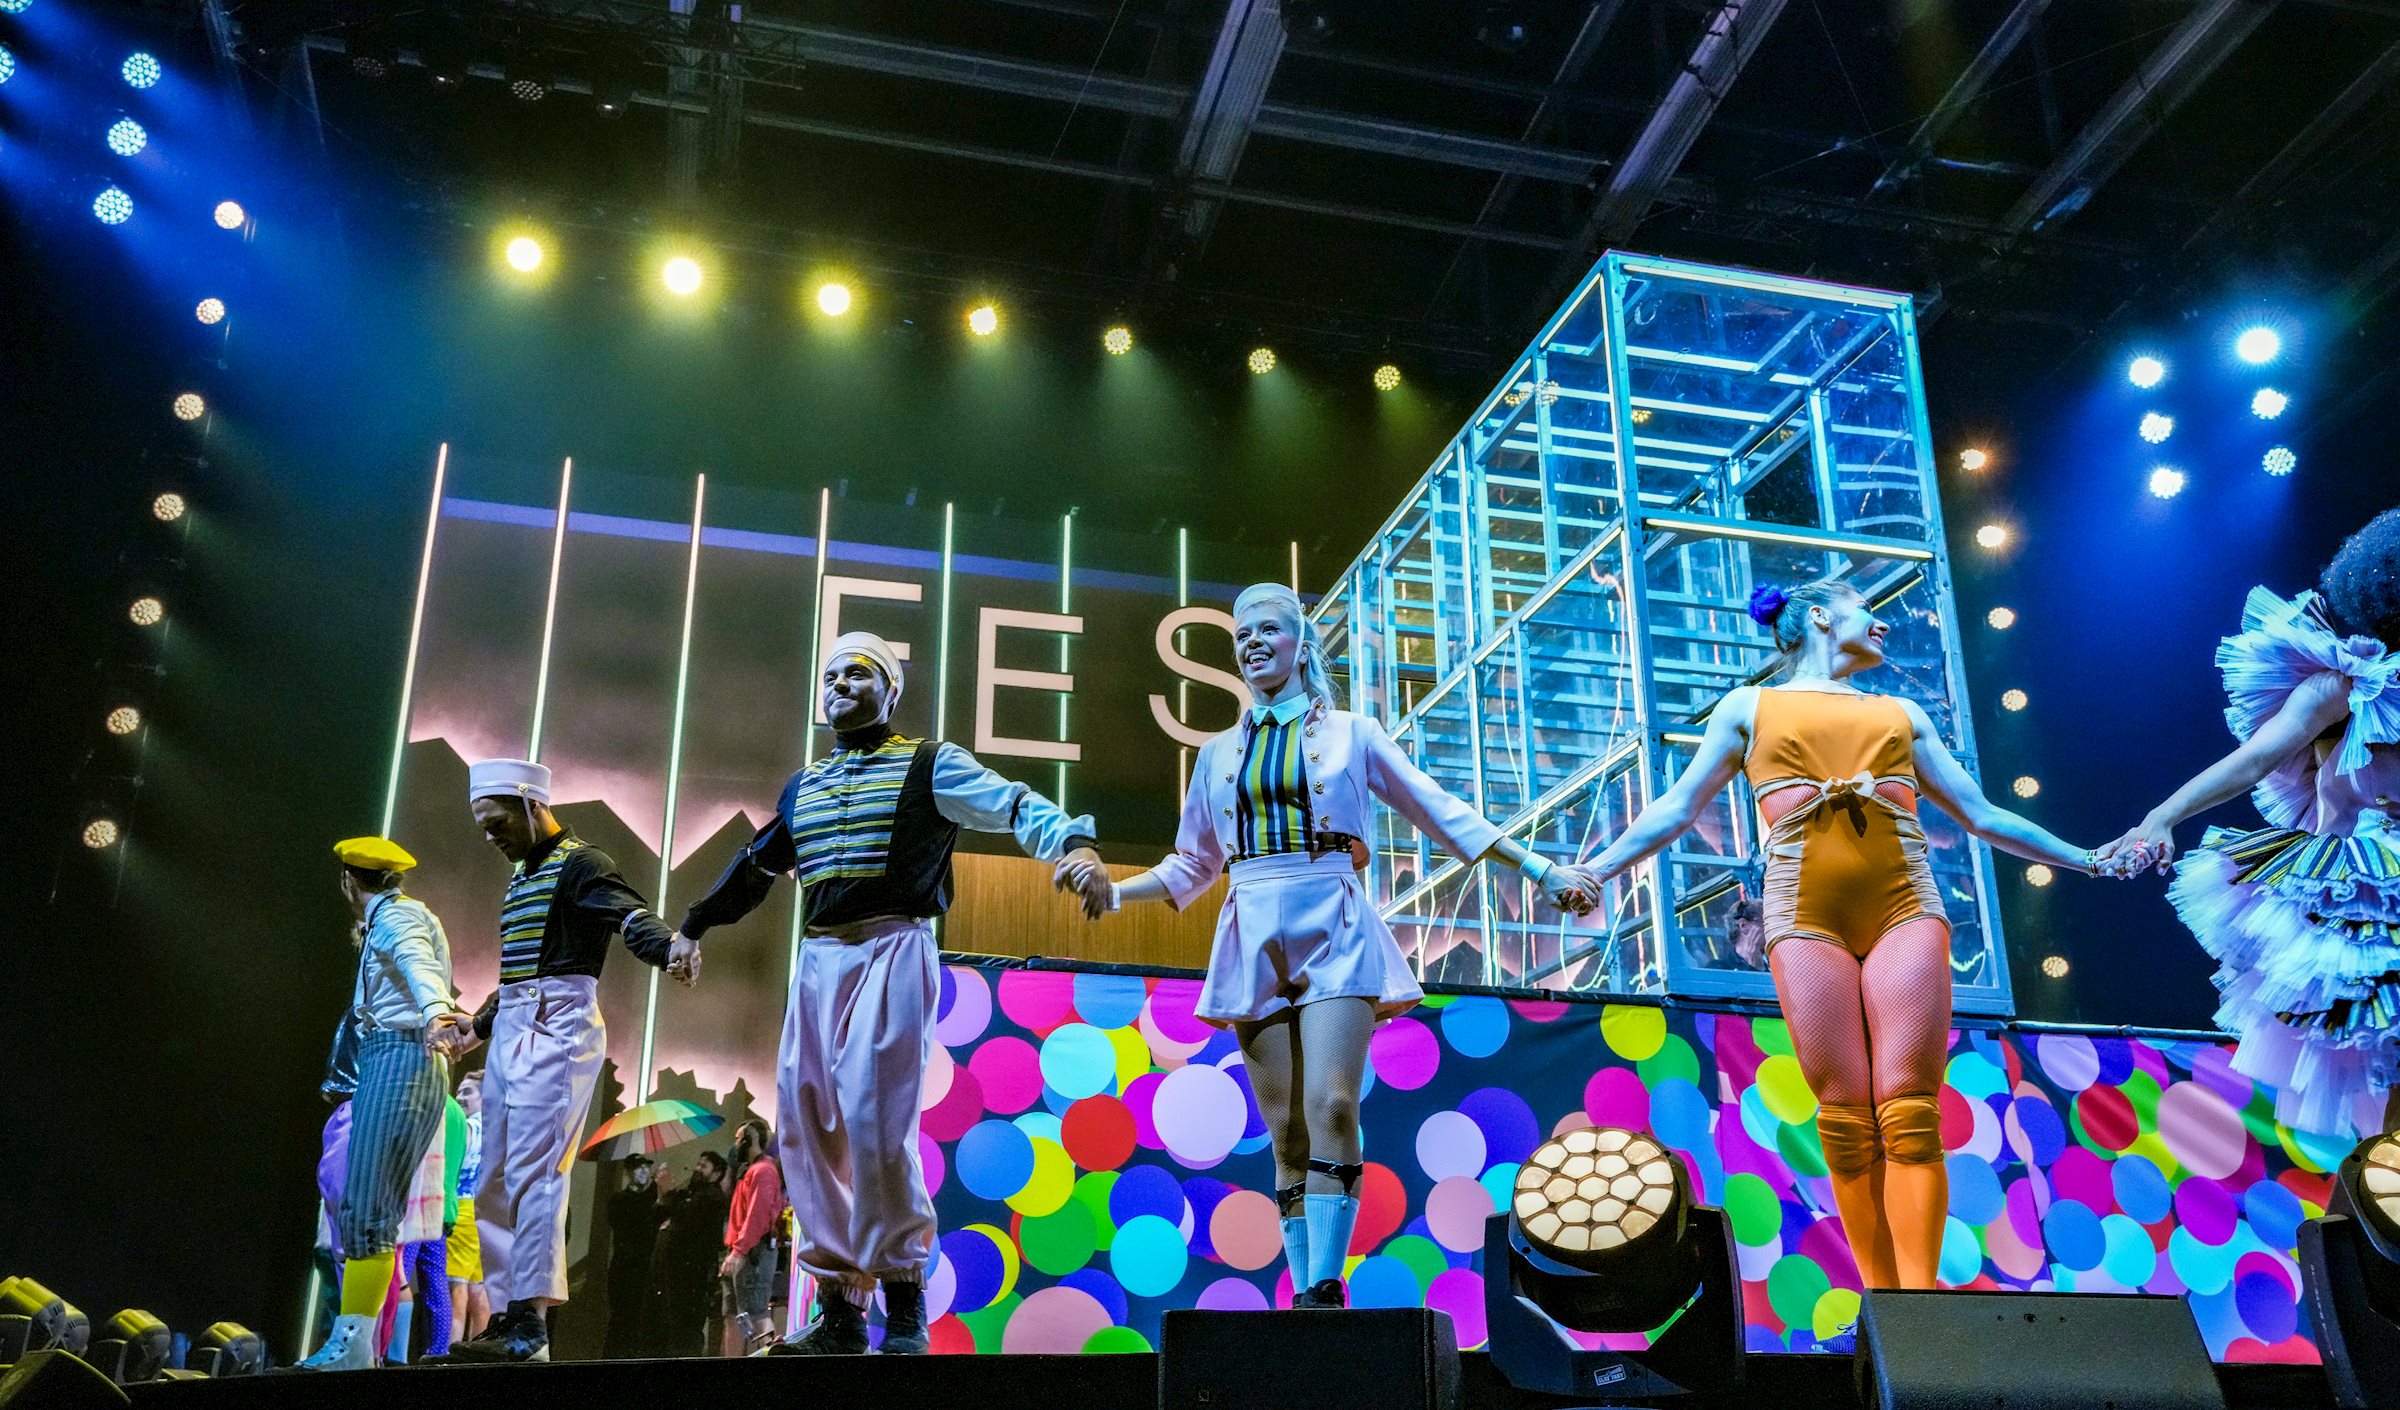 PRG freut sich über die Zusammenarbeit mit dem Cirque du Soleil und dessen neuer Show in den Bereichen Rigging, Audio- und Lichttechnik.